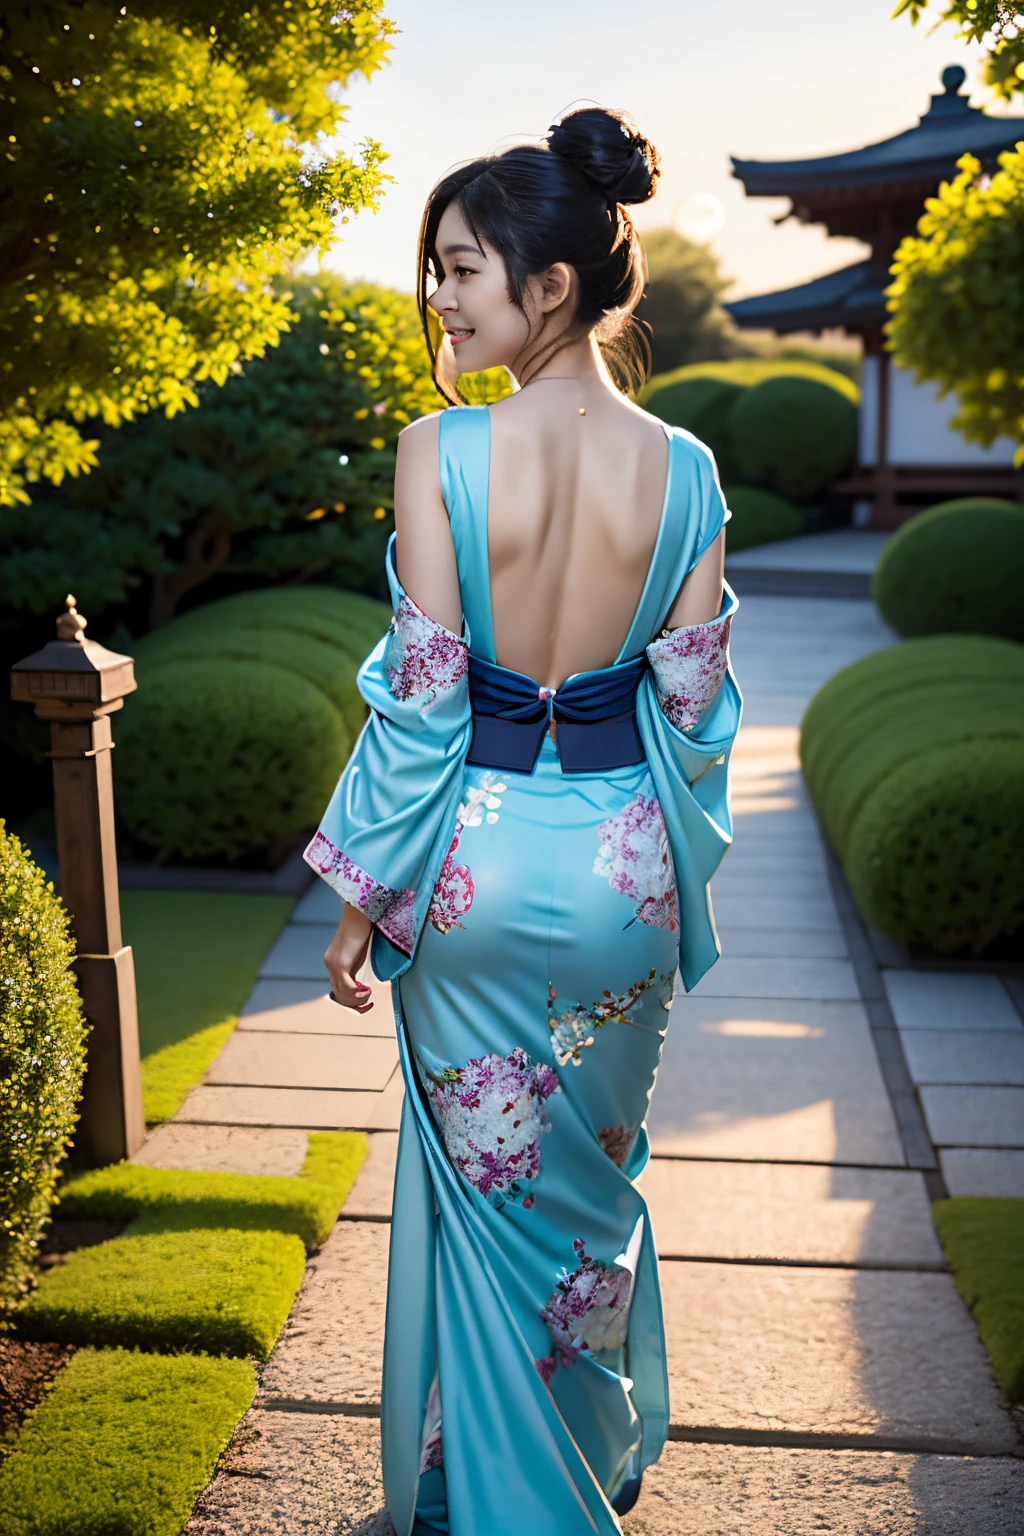 Unter dem faszinierenden Mondlicht, in einem ruhigen japanischen Garten, eine schöne Frau in einem teilweise geöffneten Kimono enthüllt ihre eleganten Schultern und ihren Rücken. Ihr zurückhaltender und doch verführerischer Blick ist voller verborgener Geheimnisse. Während sie anmutig den Gartenweg entlang schlendert, Sie hält gelegentlich inne, um dem Mond ein flüchtiges Lächeln zuzuwerfen. Das sanfte Licht der traditionellen Laternen schafft eine zauberhafte Atmosphäre, während ihr locker gebundenes Haar sanft weht, noch mehr Eleganz und Anziehungskraft.